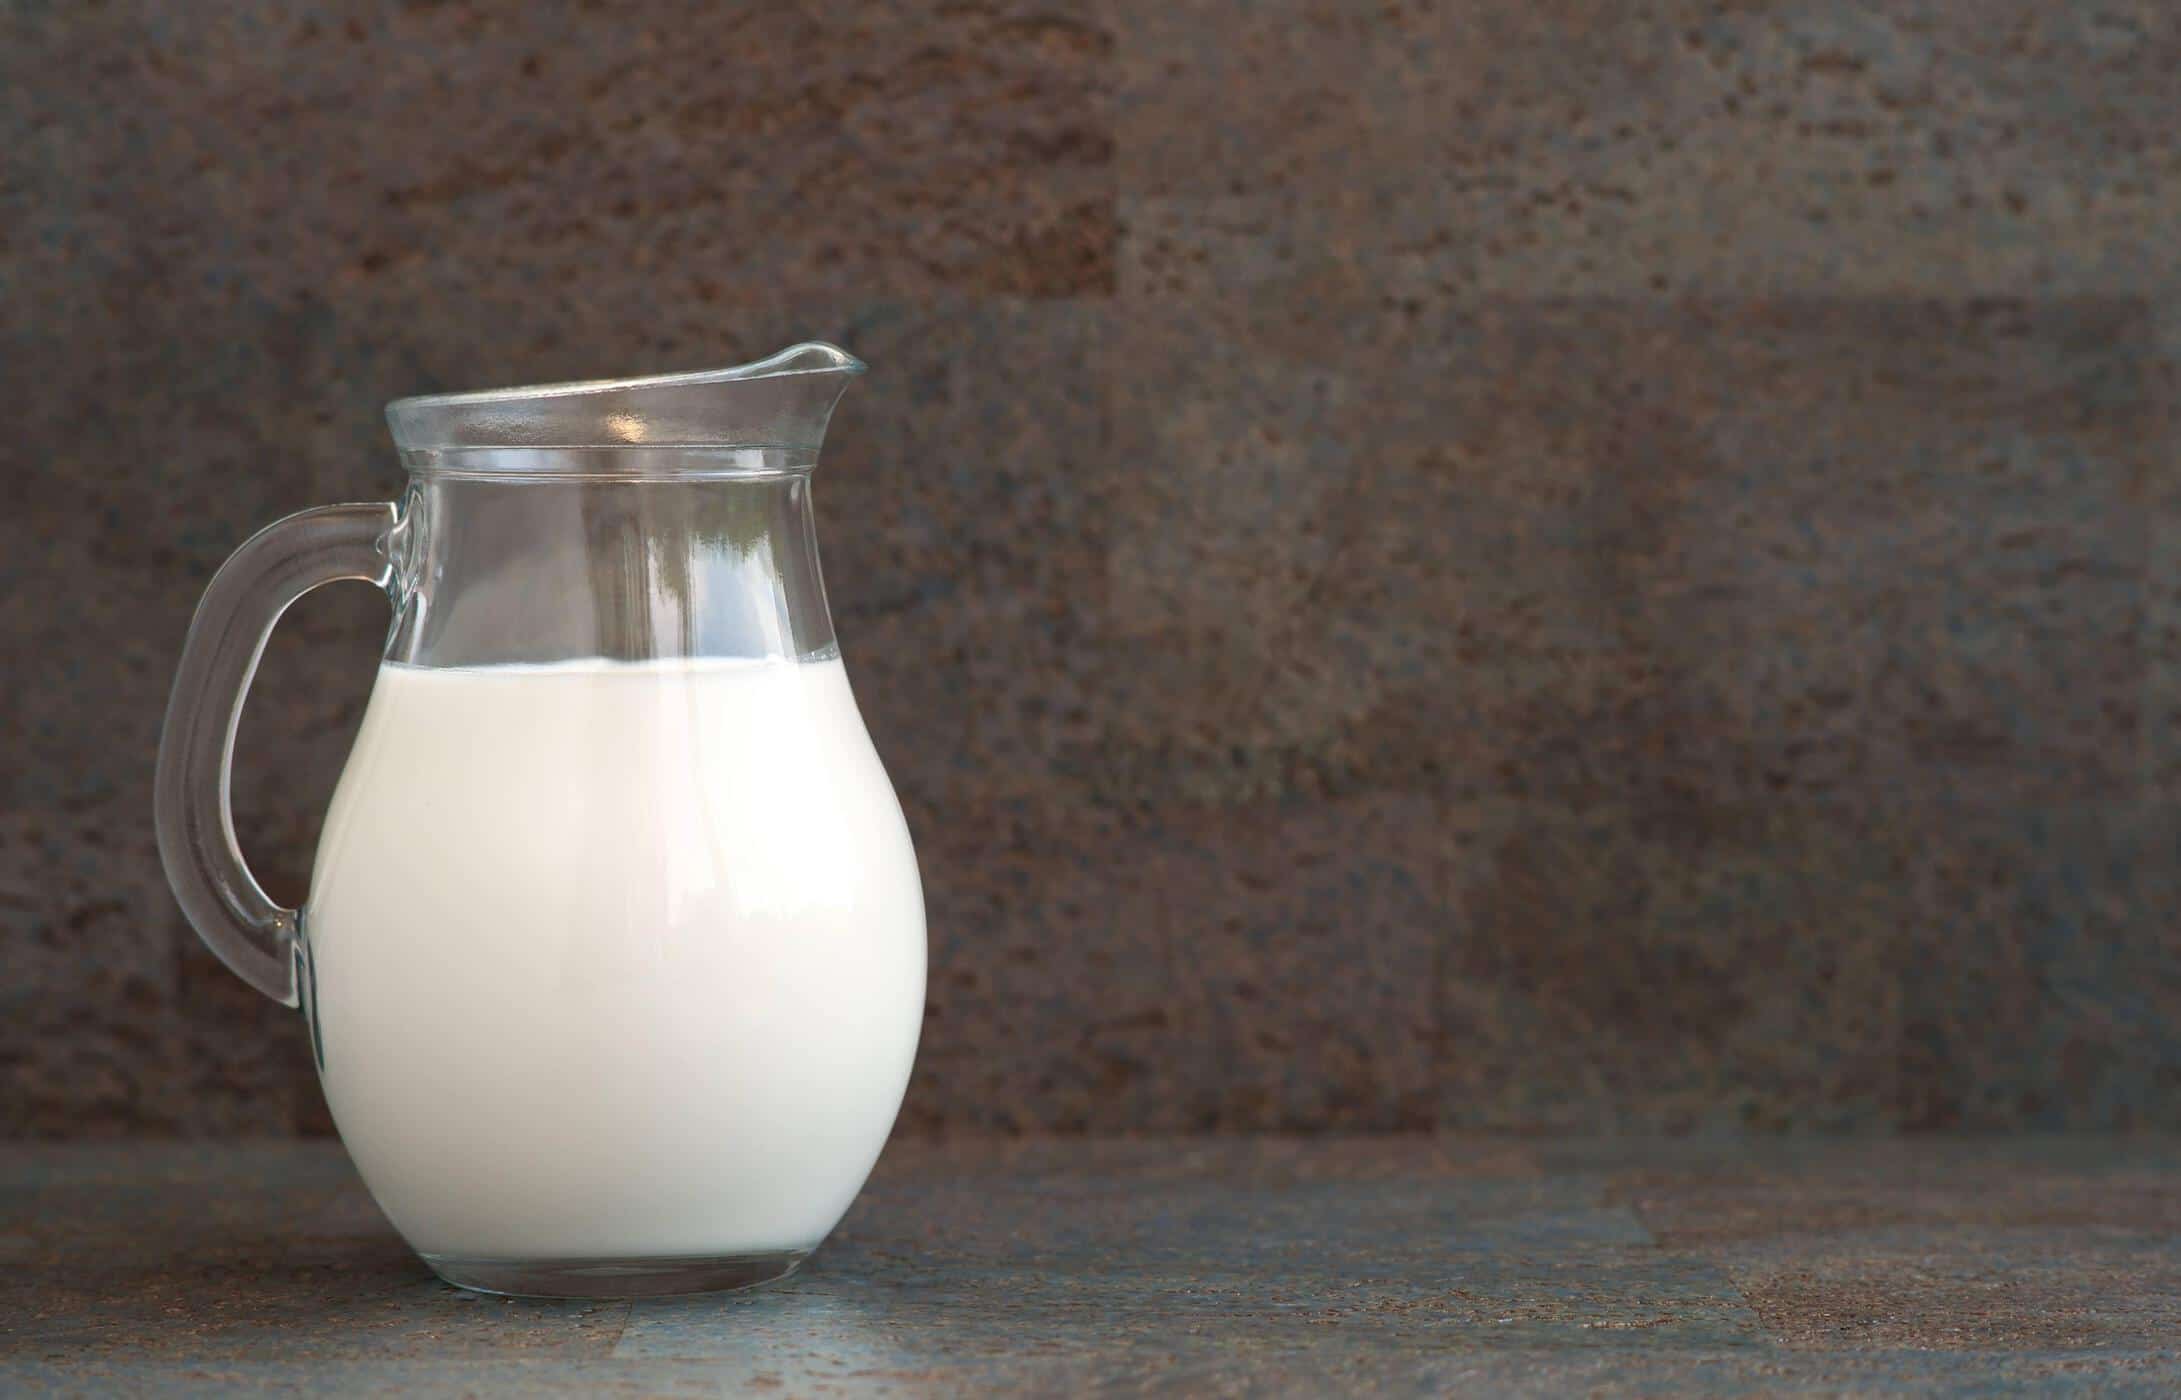 Razno o mlijeku s niskim sadržajem laktoze